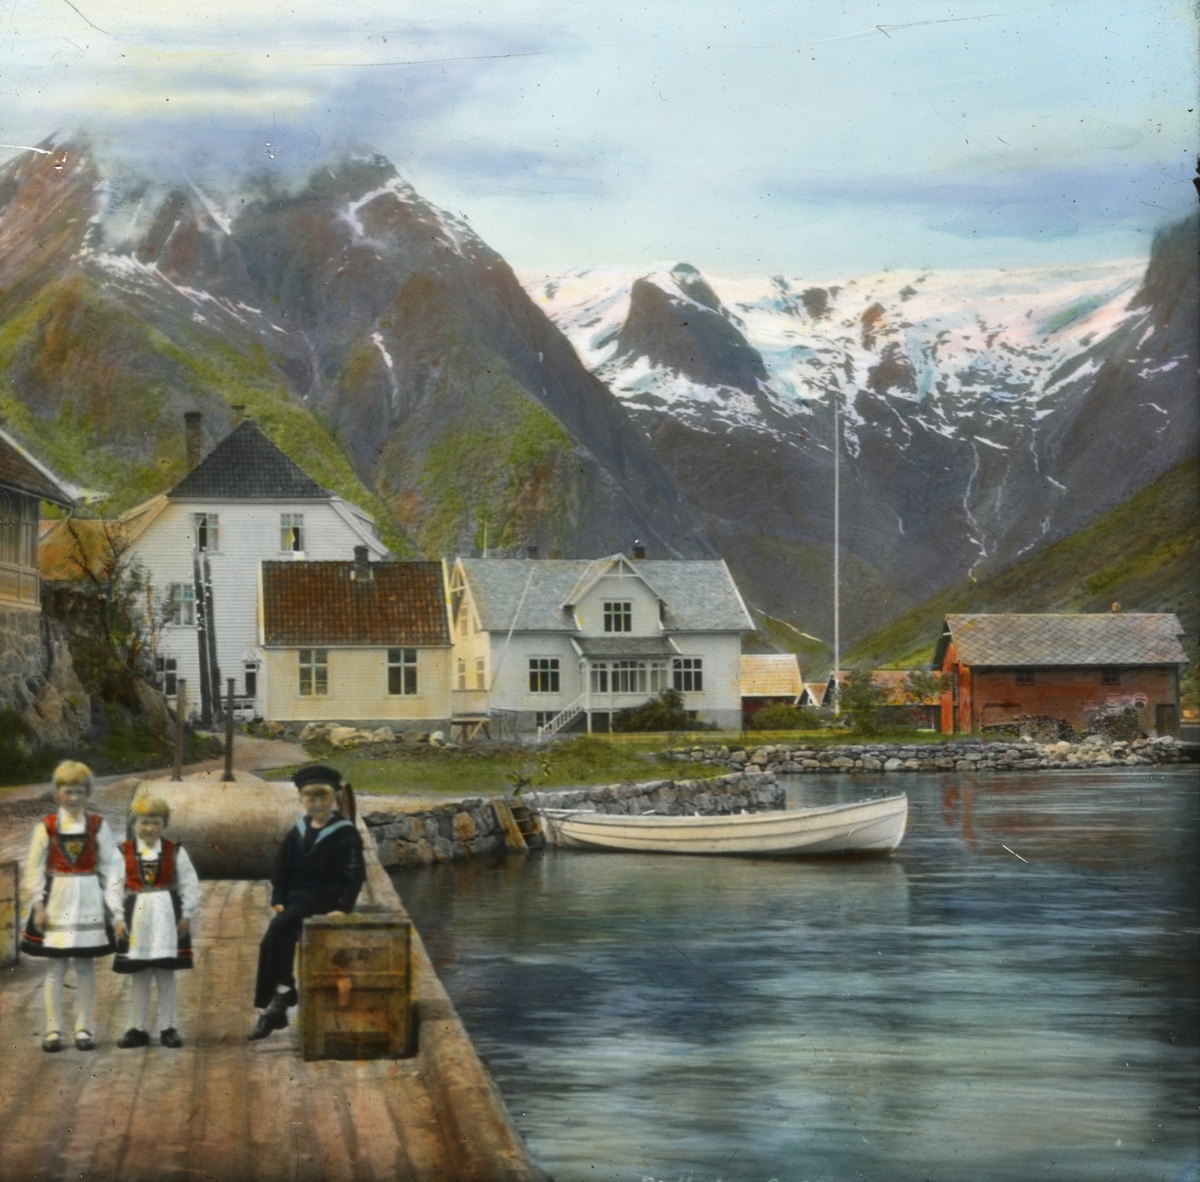 Håndkolorert dias. Bildet viser tre barn på en brygge i Balestrand. I bakgrunnen ses en robåt, trehus, grønne fjellsider og snøkledde topper. Bildets tittel "Balholm" er det tidligere navnet til tettstedet Balestrand.